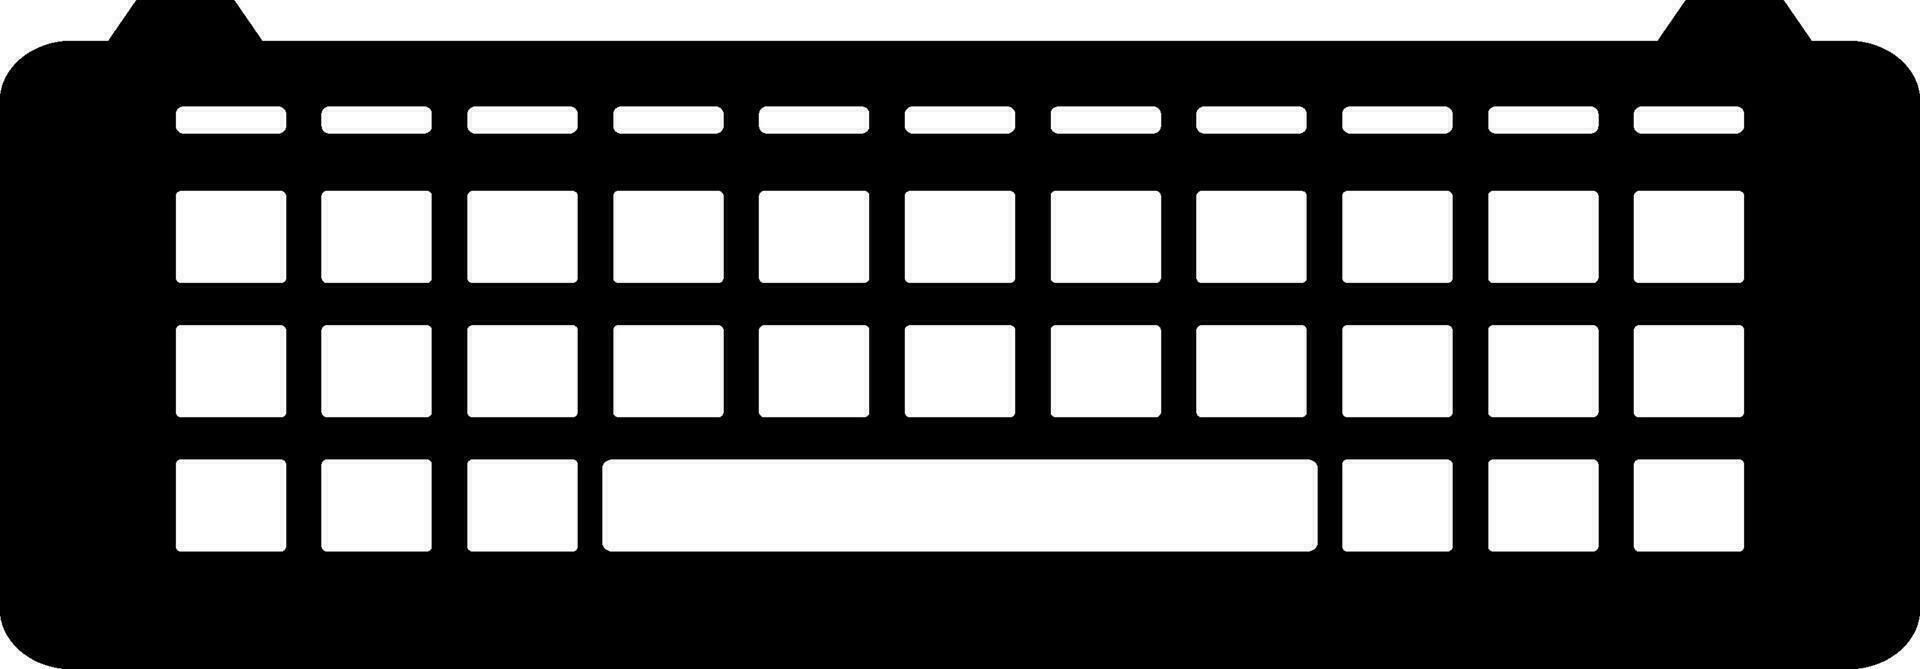 noir et blanc clavier dans plat style. vecteur